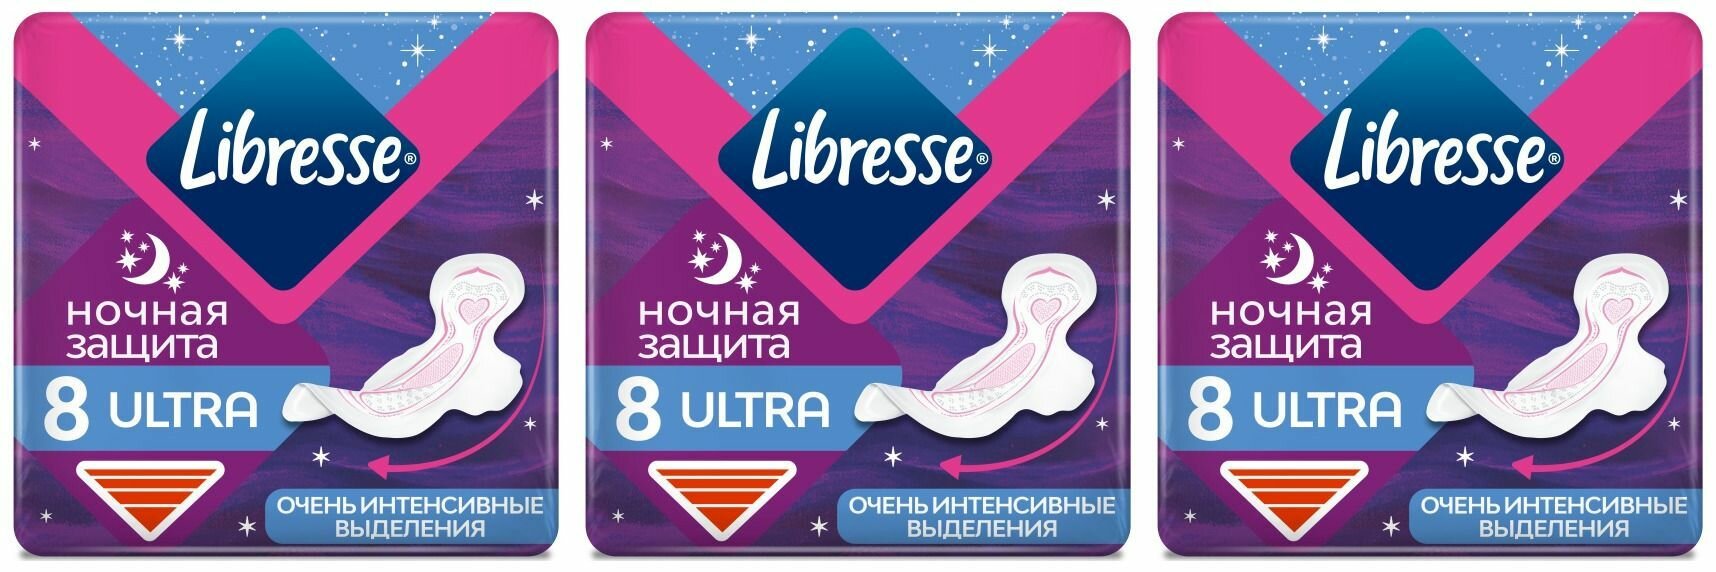 Libresse Прокладки гигиенические, Ultra, Ночные с мягкой поверхностью, 8 шт в уп, 3 упаковки